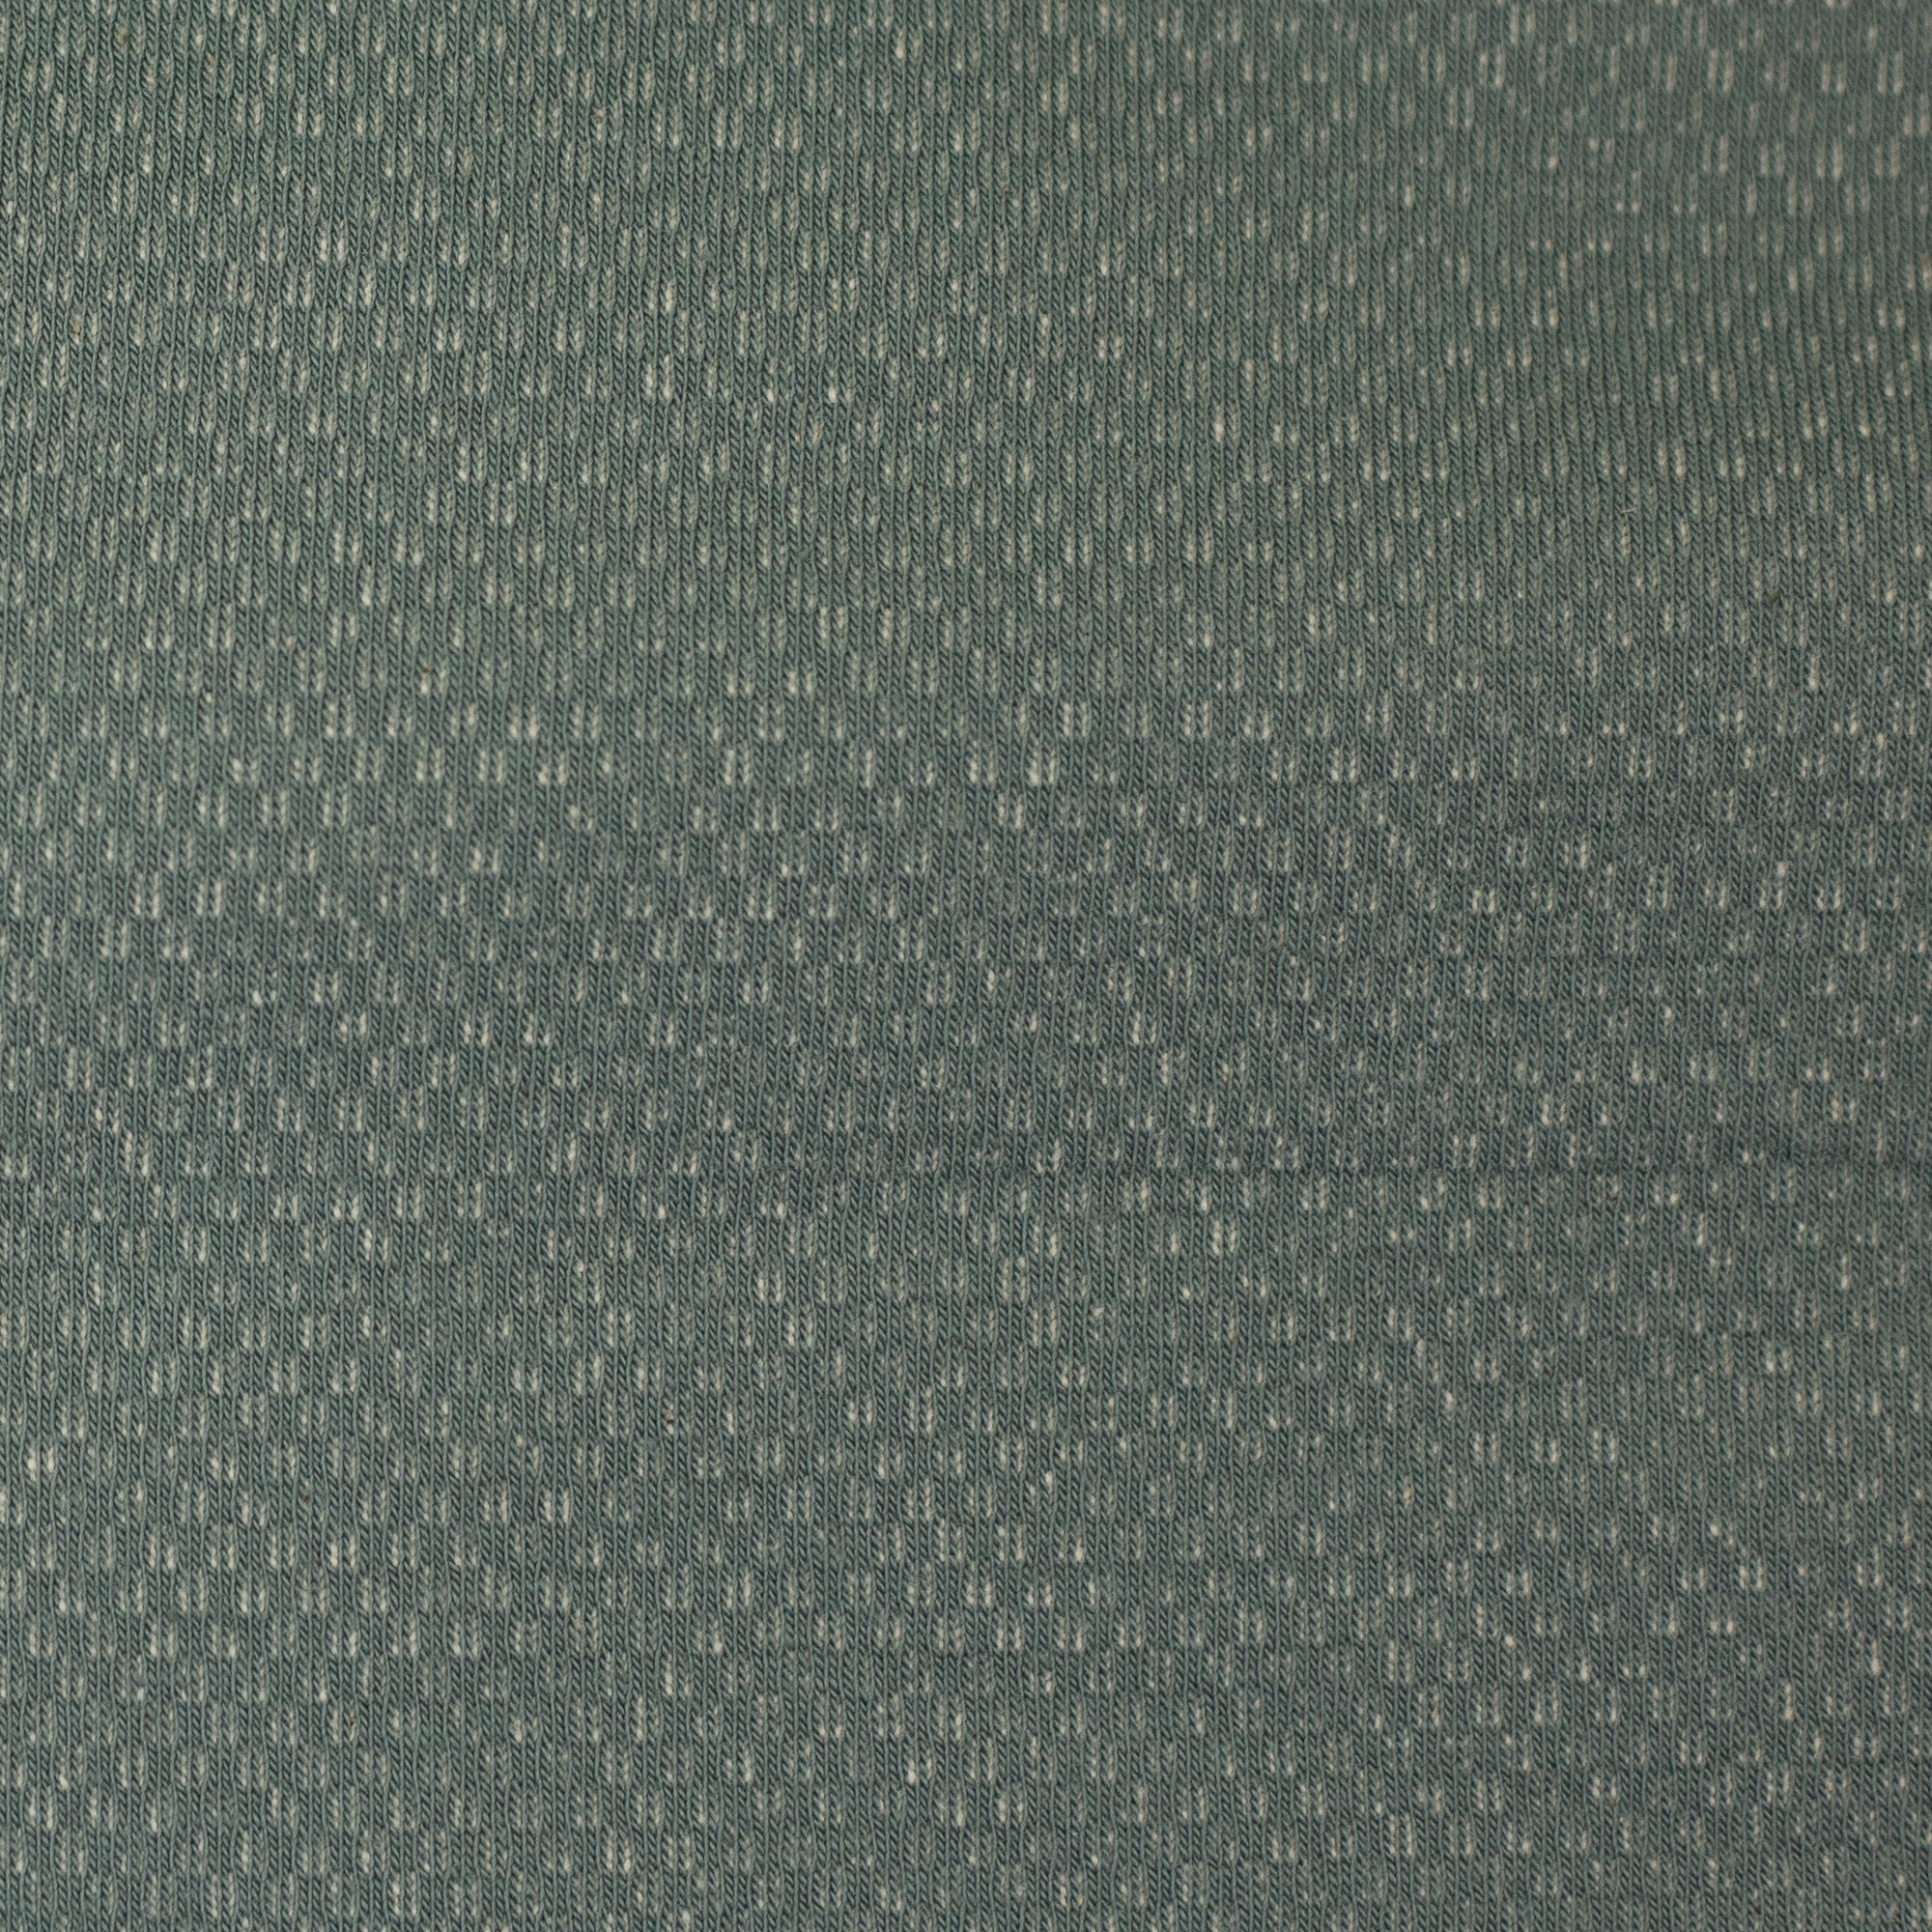 Kuschelsweat smaragd Skagen - Swafing